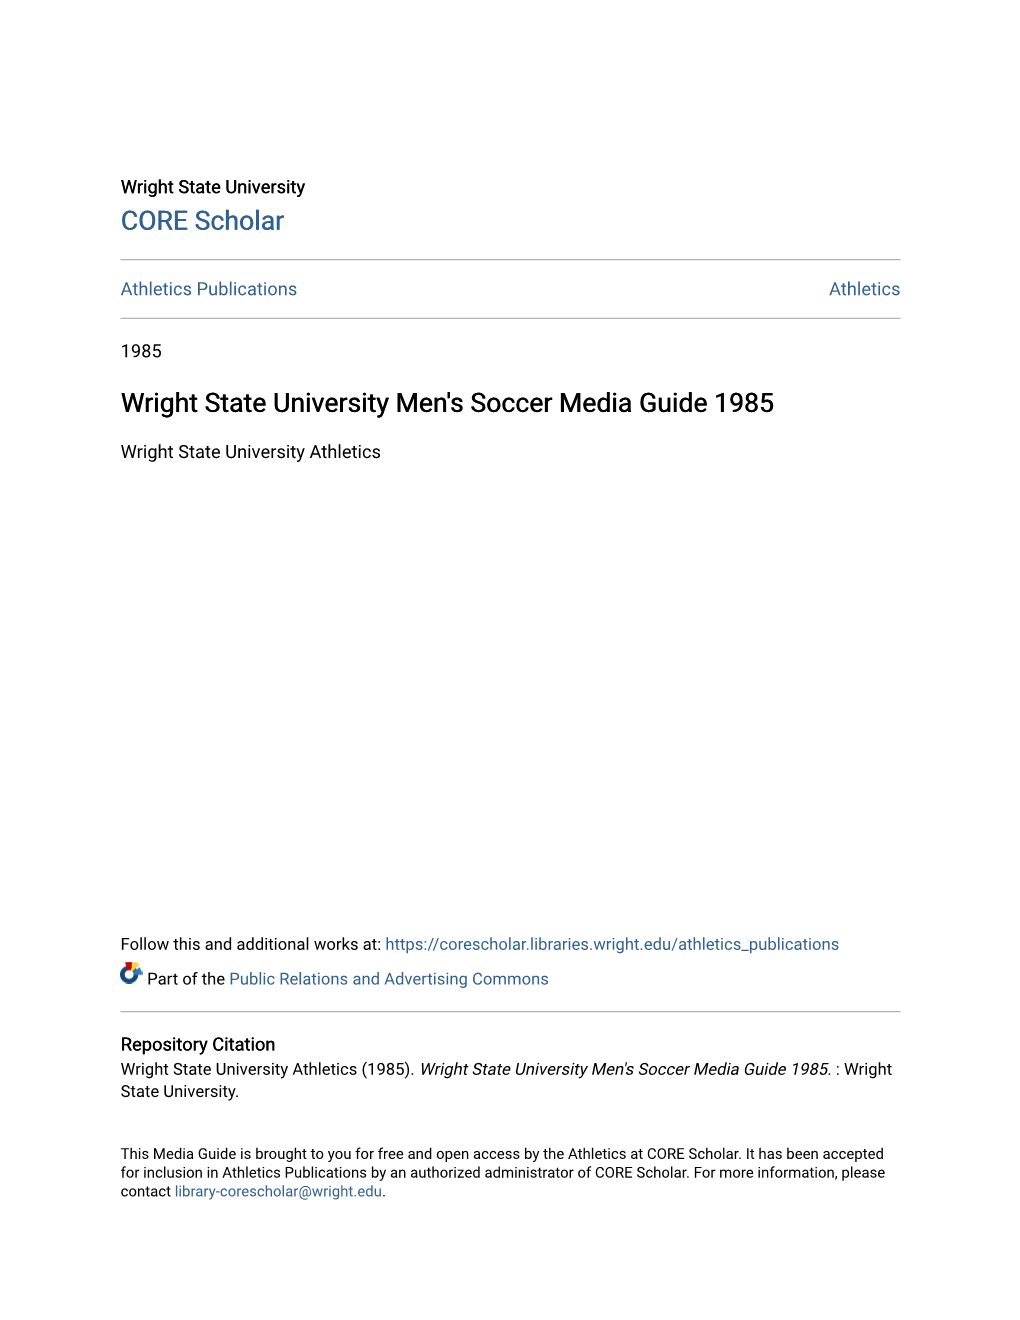 Wright State University Men's Soccer Media Guide 1985